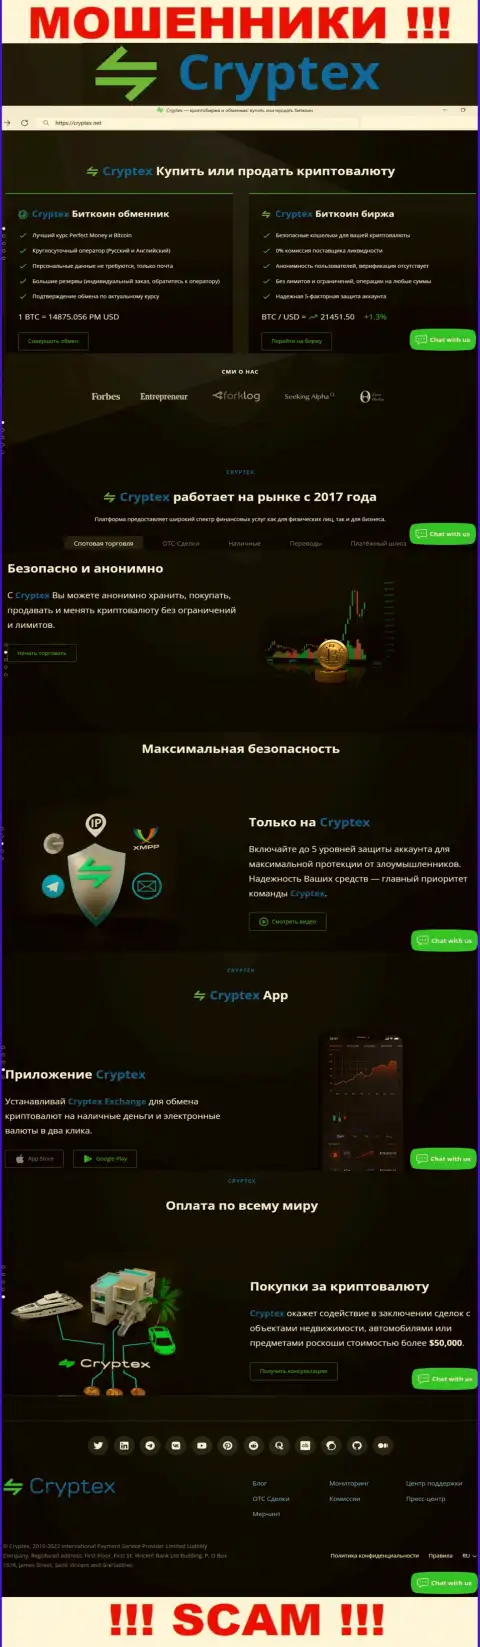 Скрин официального web-ресурса жульнической организации Криптекс Нет